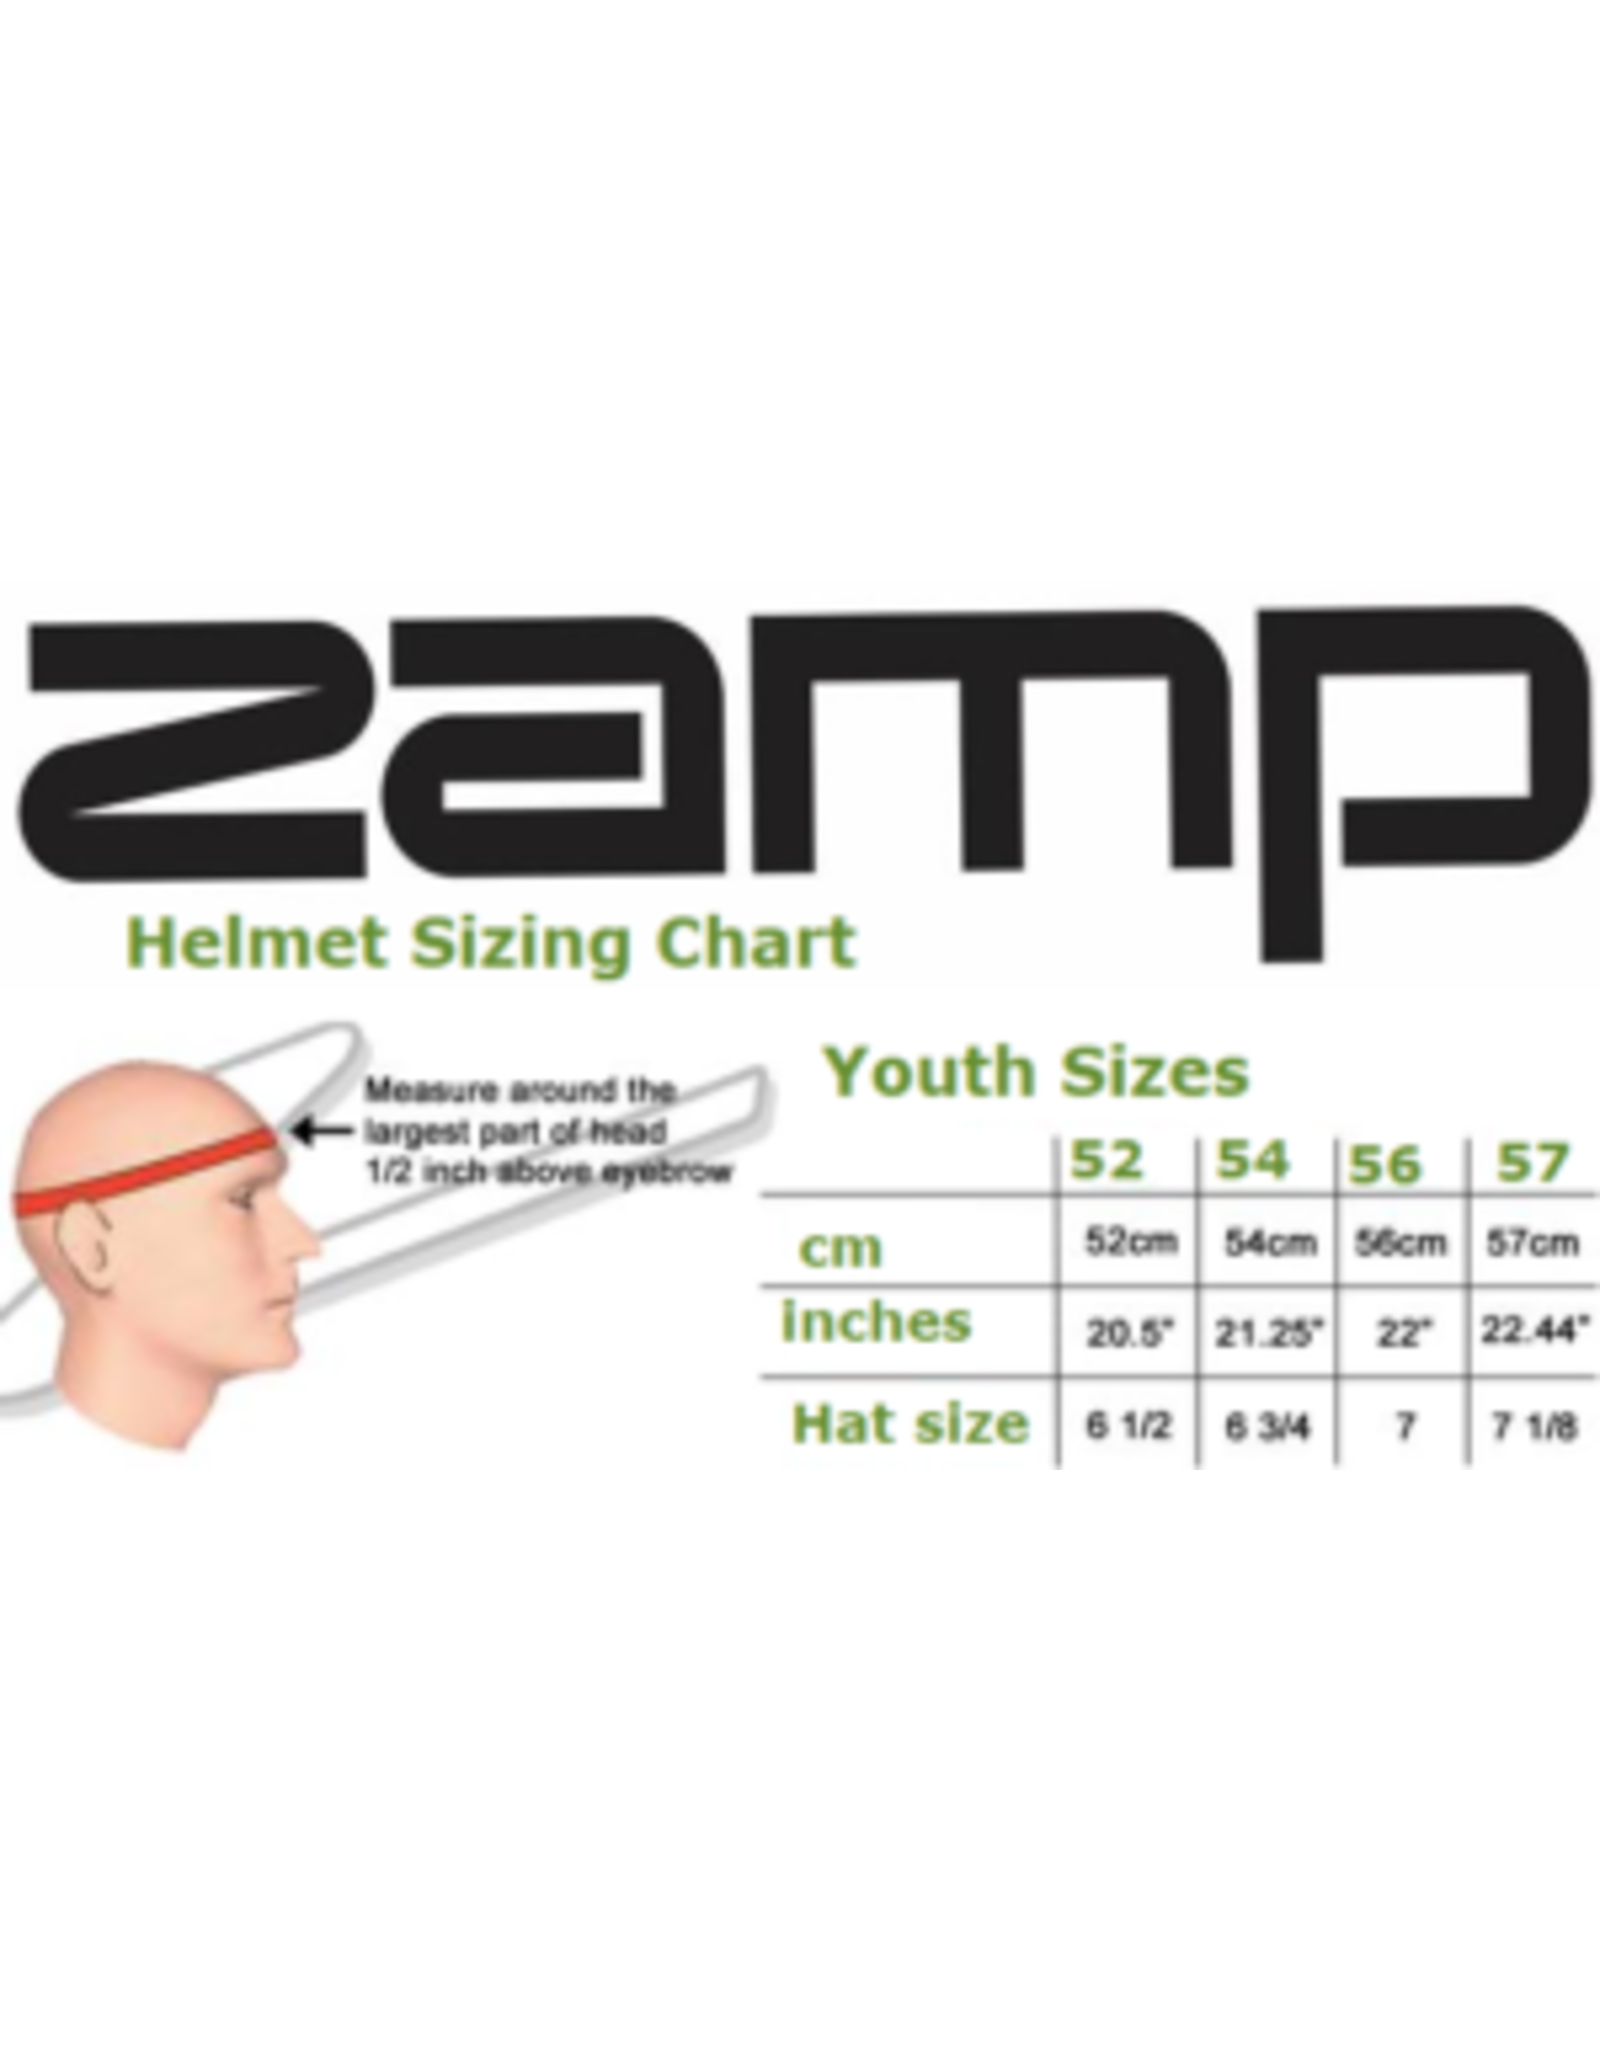 Zamp Zamp RZ-42Y Zwart / rood / oranje